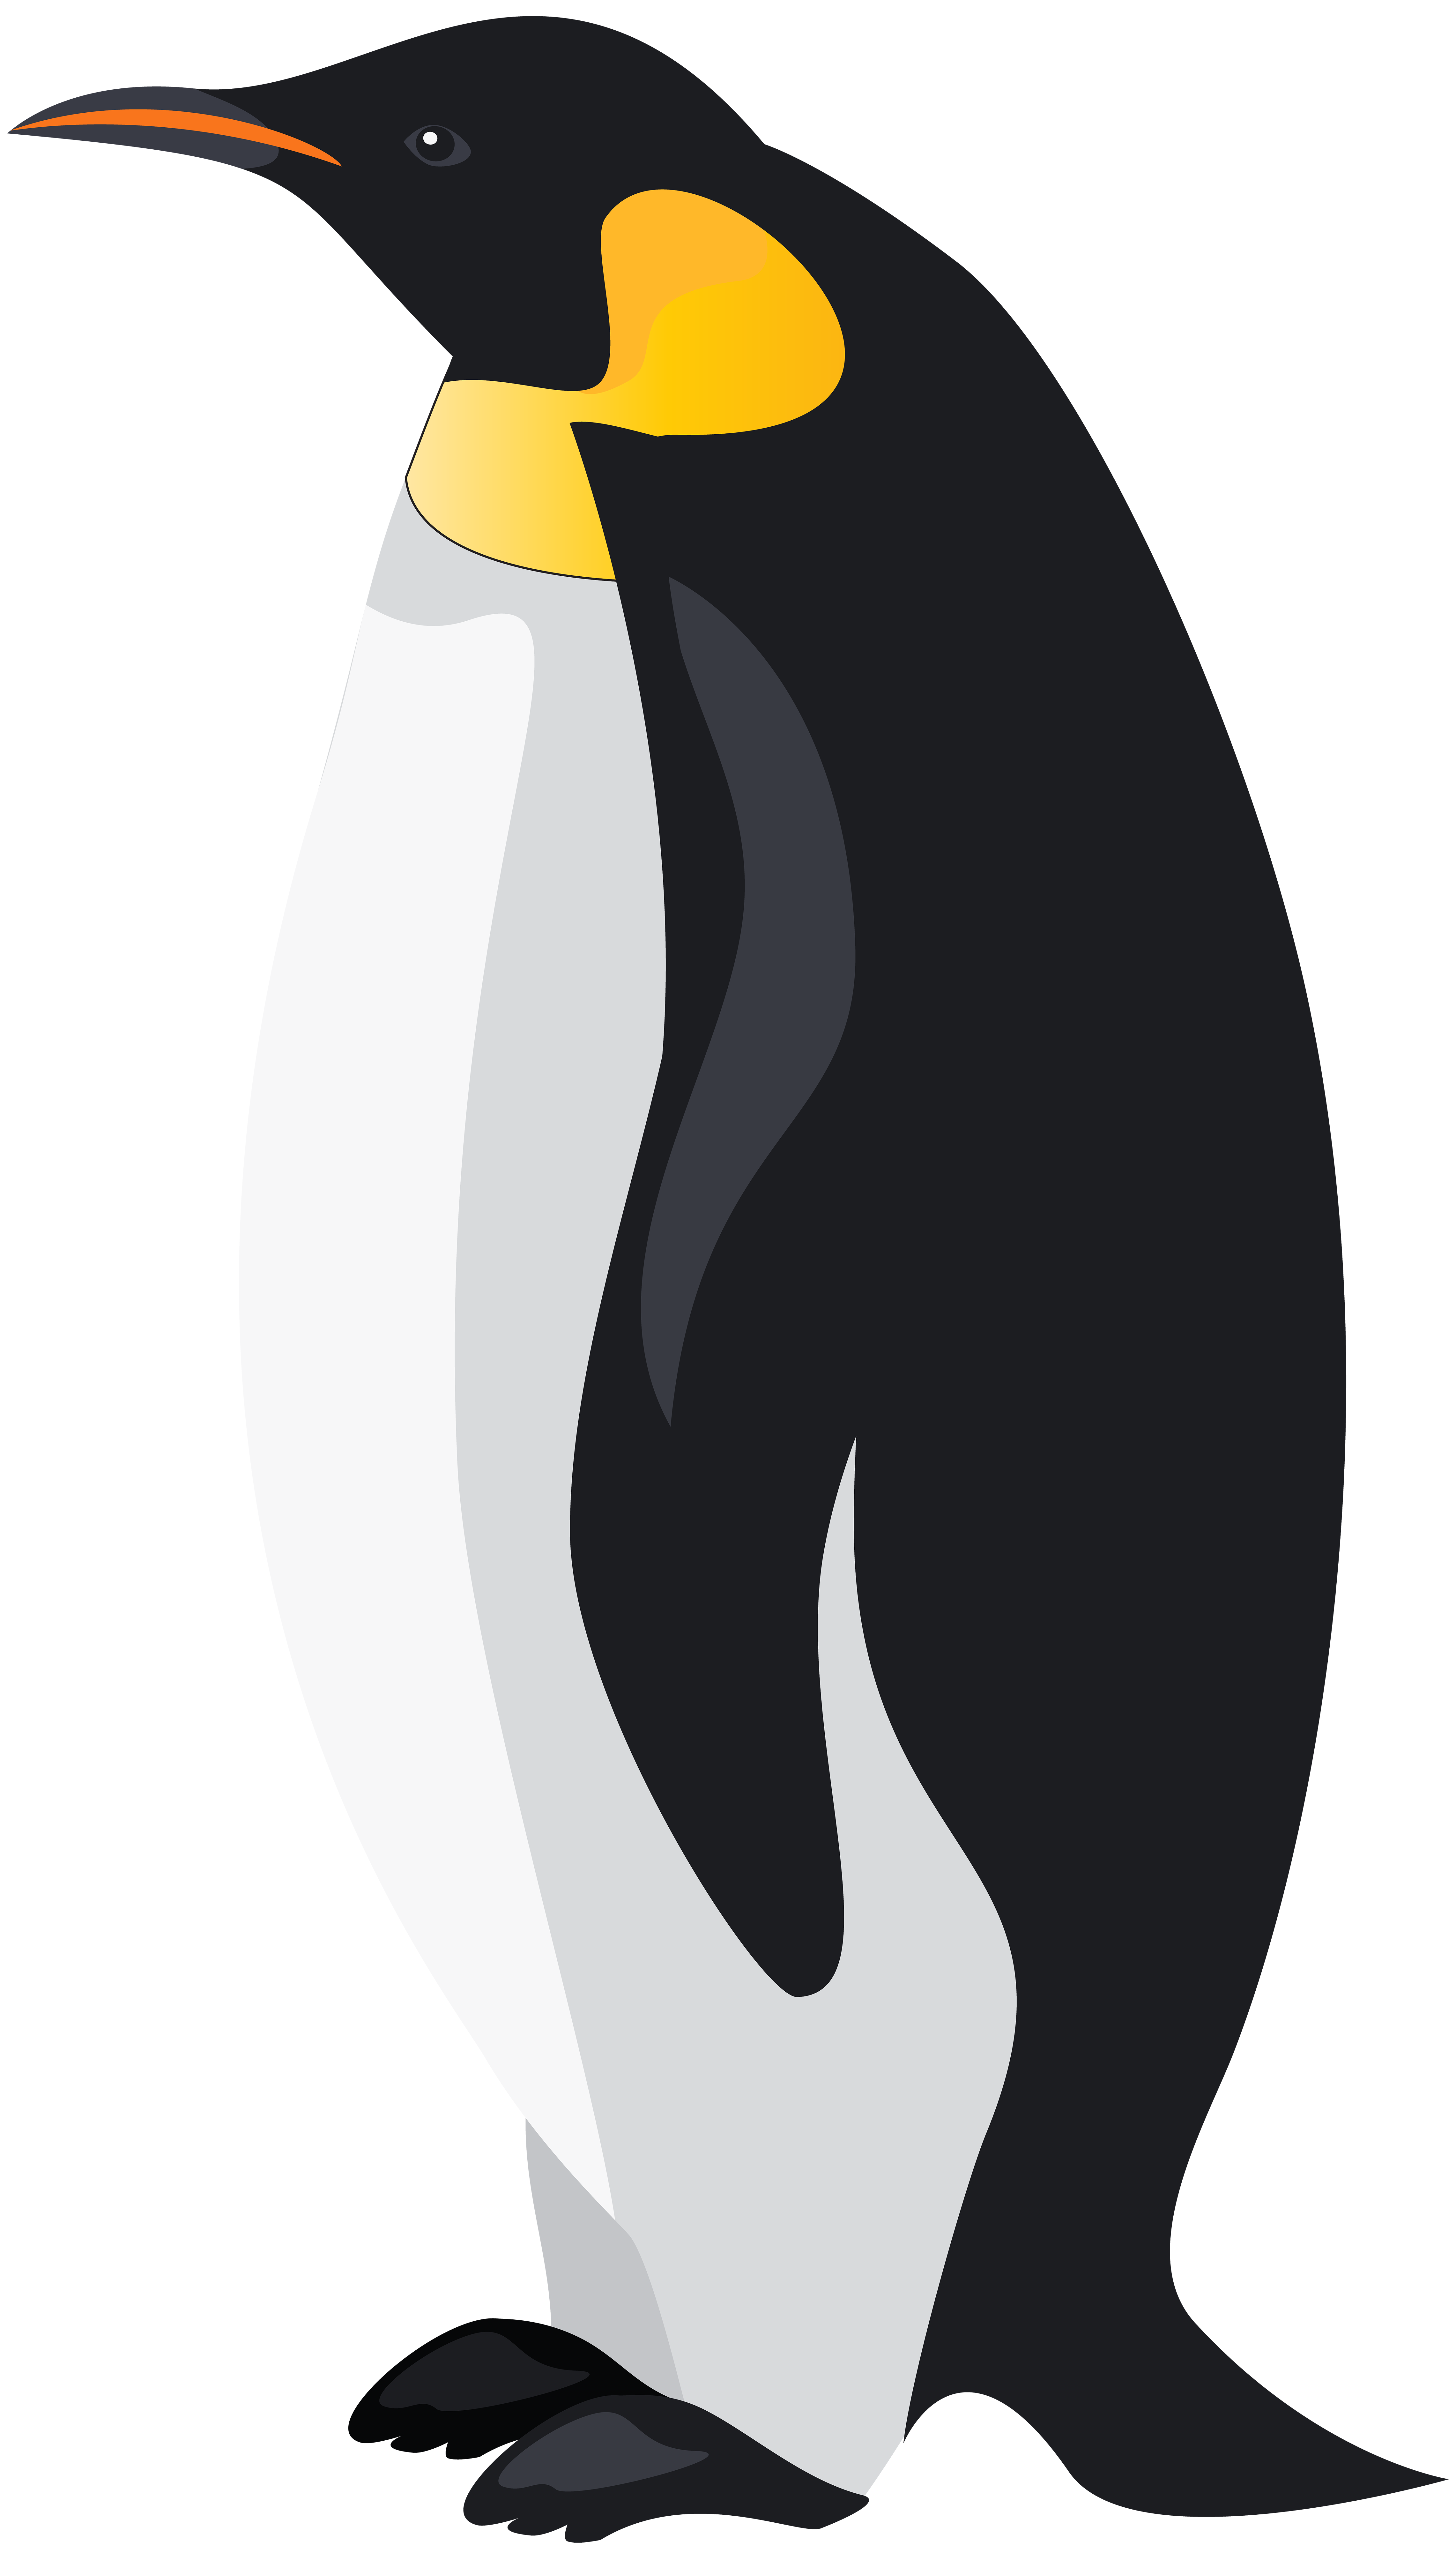 penguin svg free download